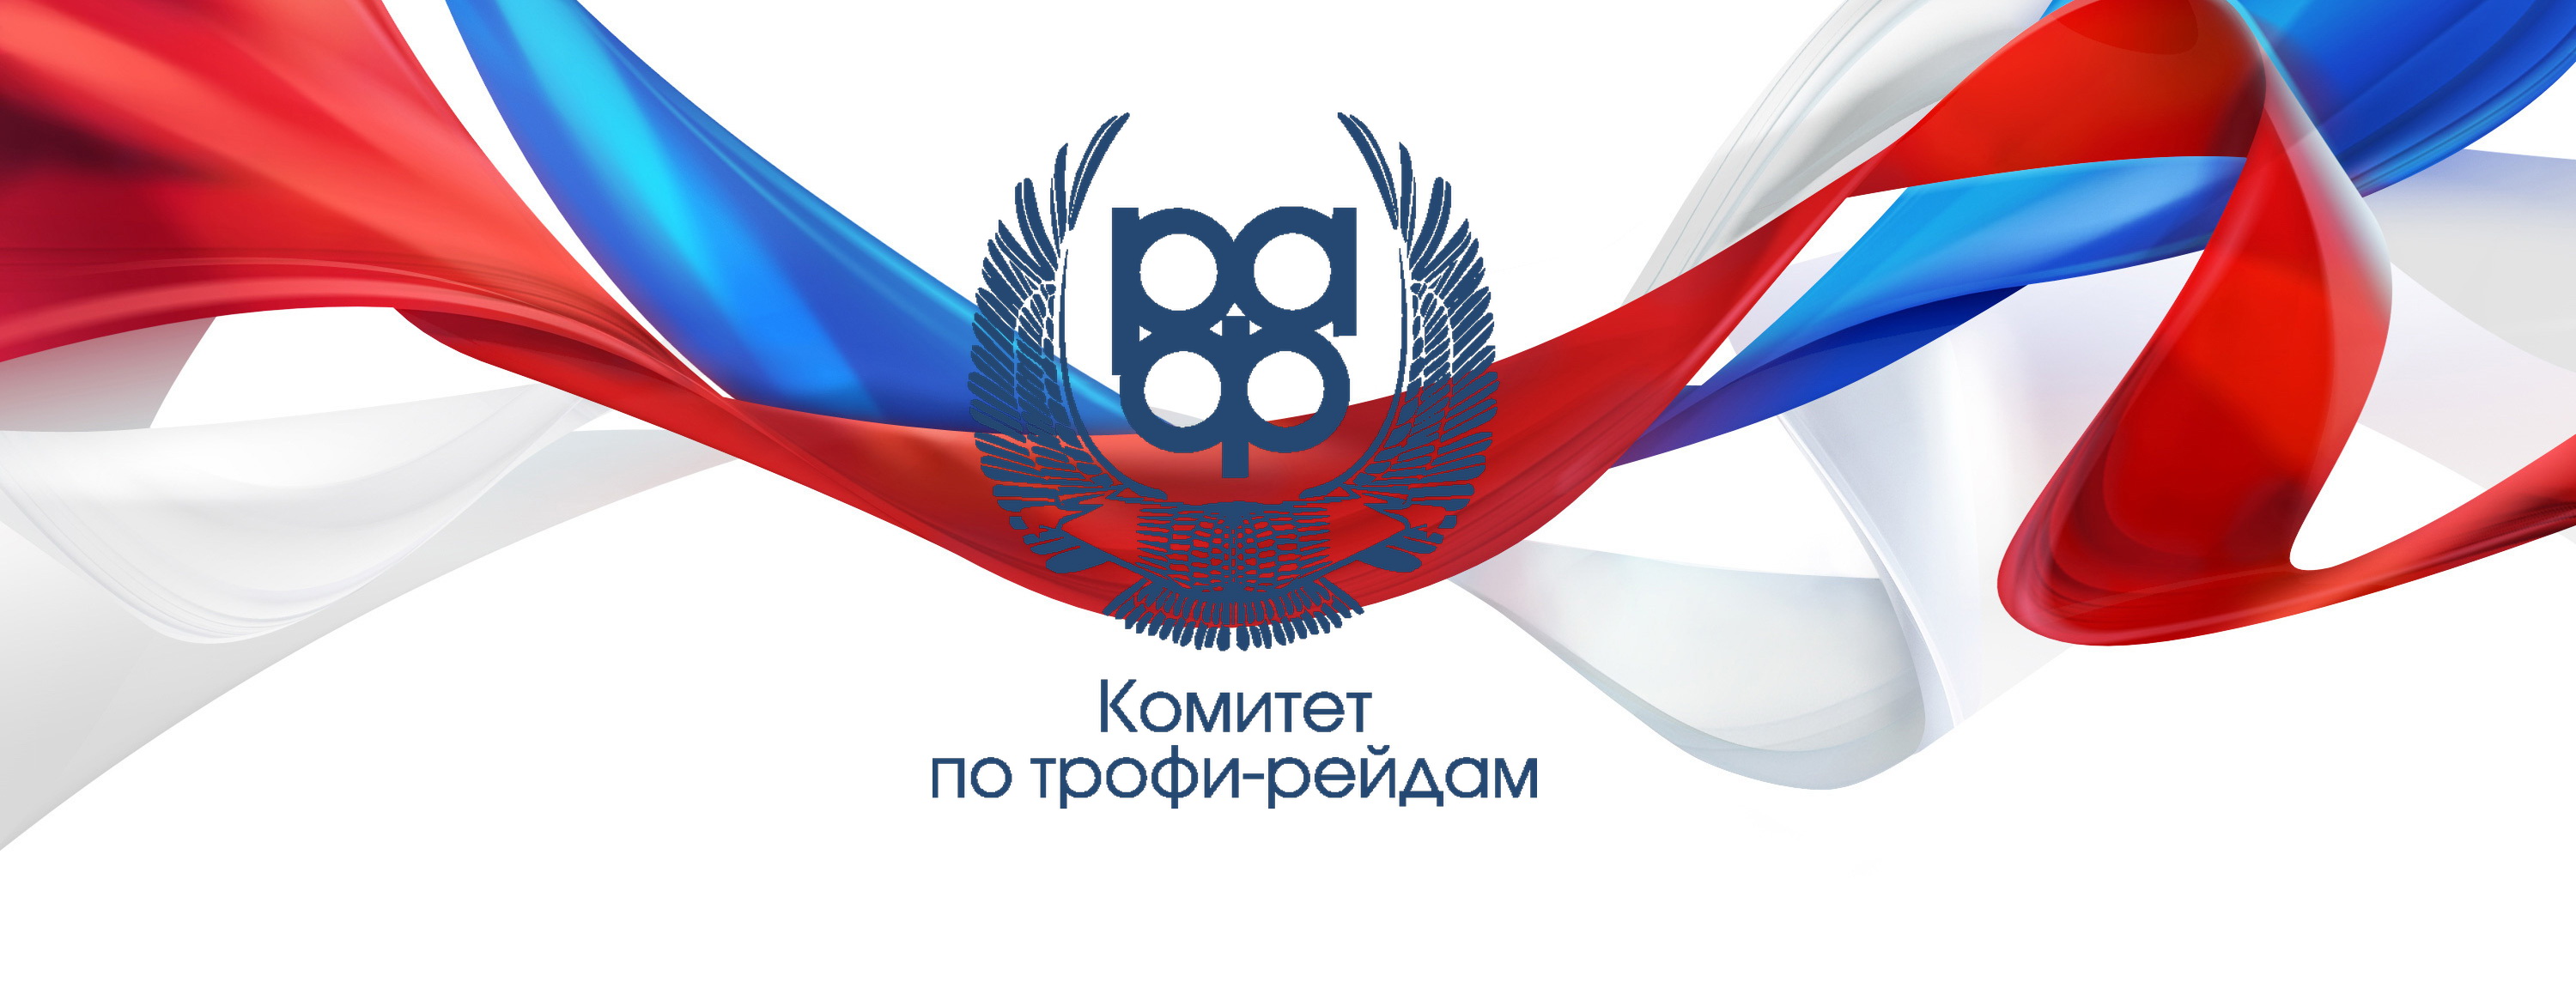 Открыт прием заявок на Кубок России 2018